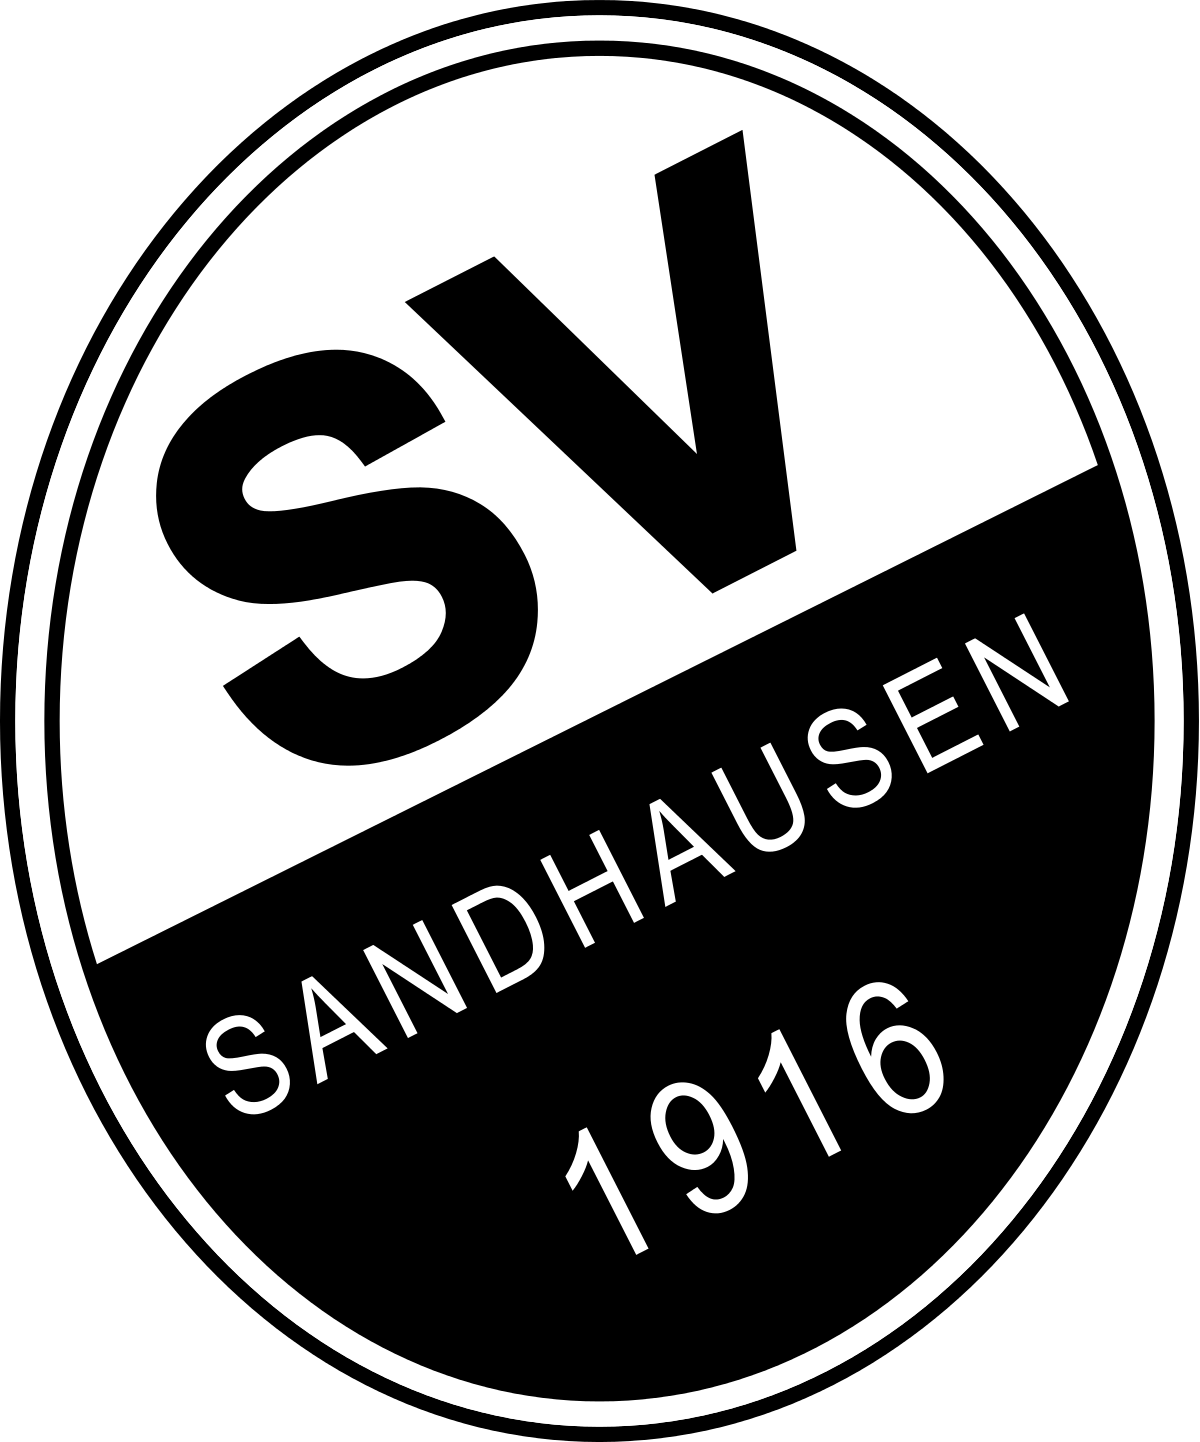 Sandhausen-2 logo